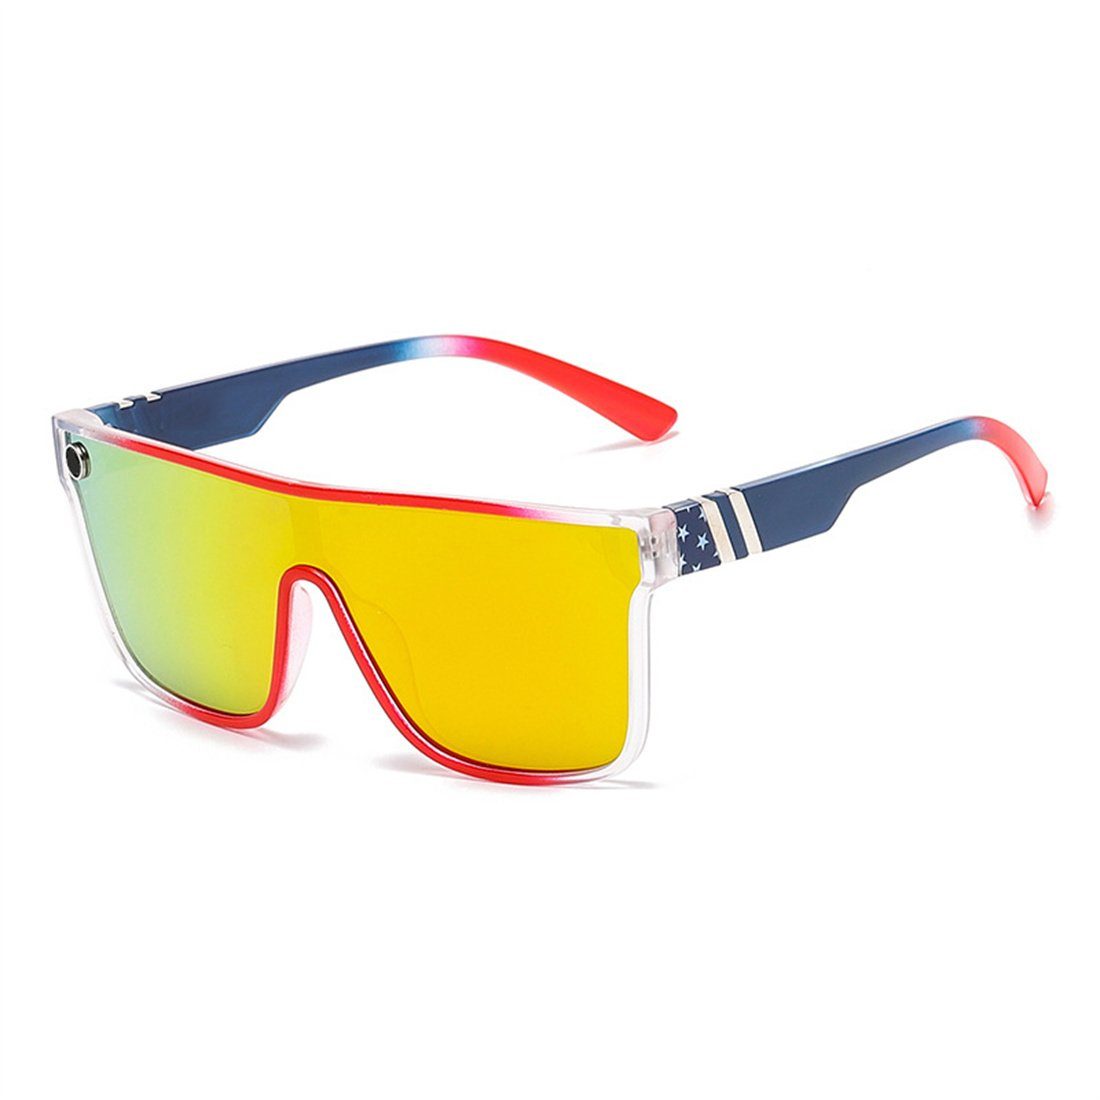 DÖRÖY für Männer und Radsport-Sonnenbrillen Sonnenbrille Outdoor-Sonnenbrillen Frauen,